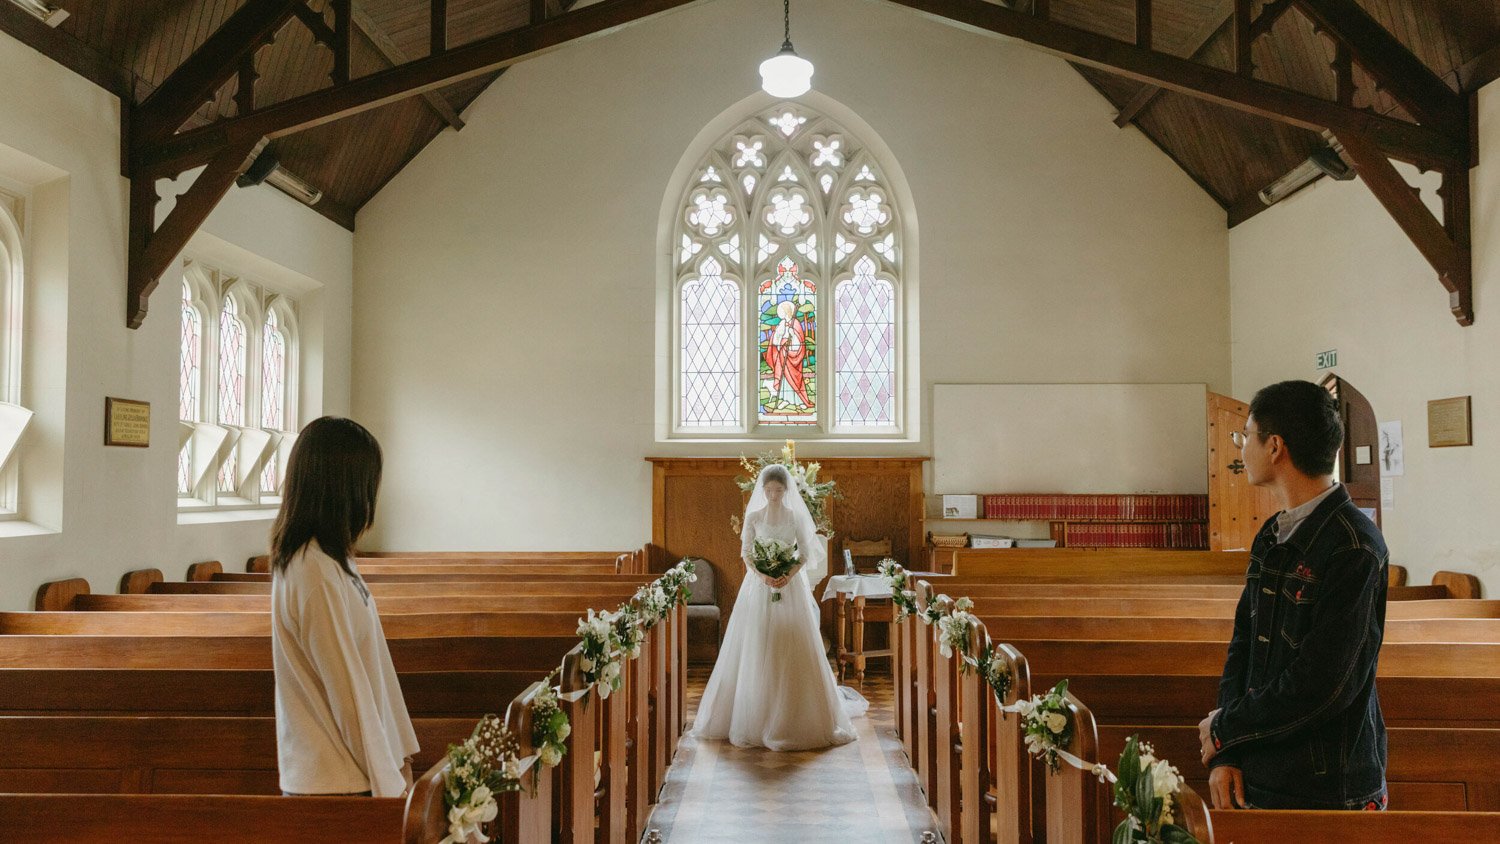 Queenstownn St Peter's Anglican Church wedding elopement photographer Panda Bay Films-27.jpg